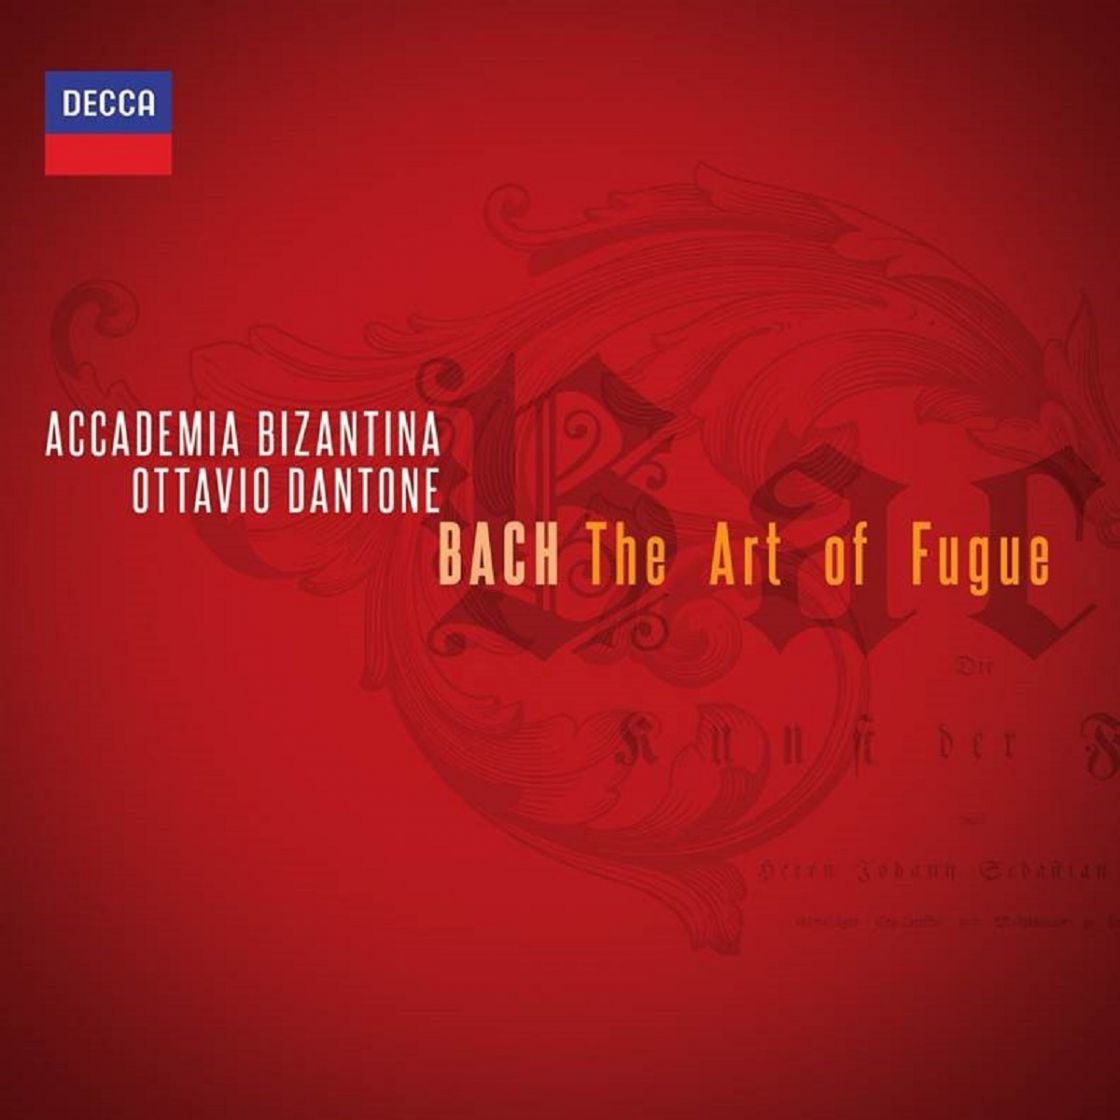 Accademia Bizantina &quot;Bach: The Art of Fugue&quot;